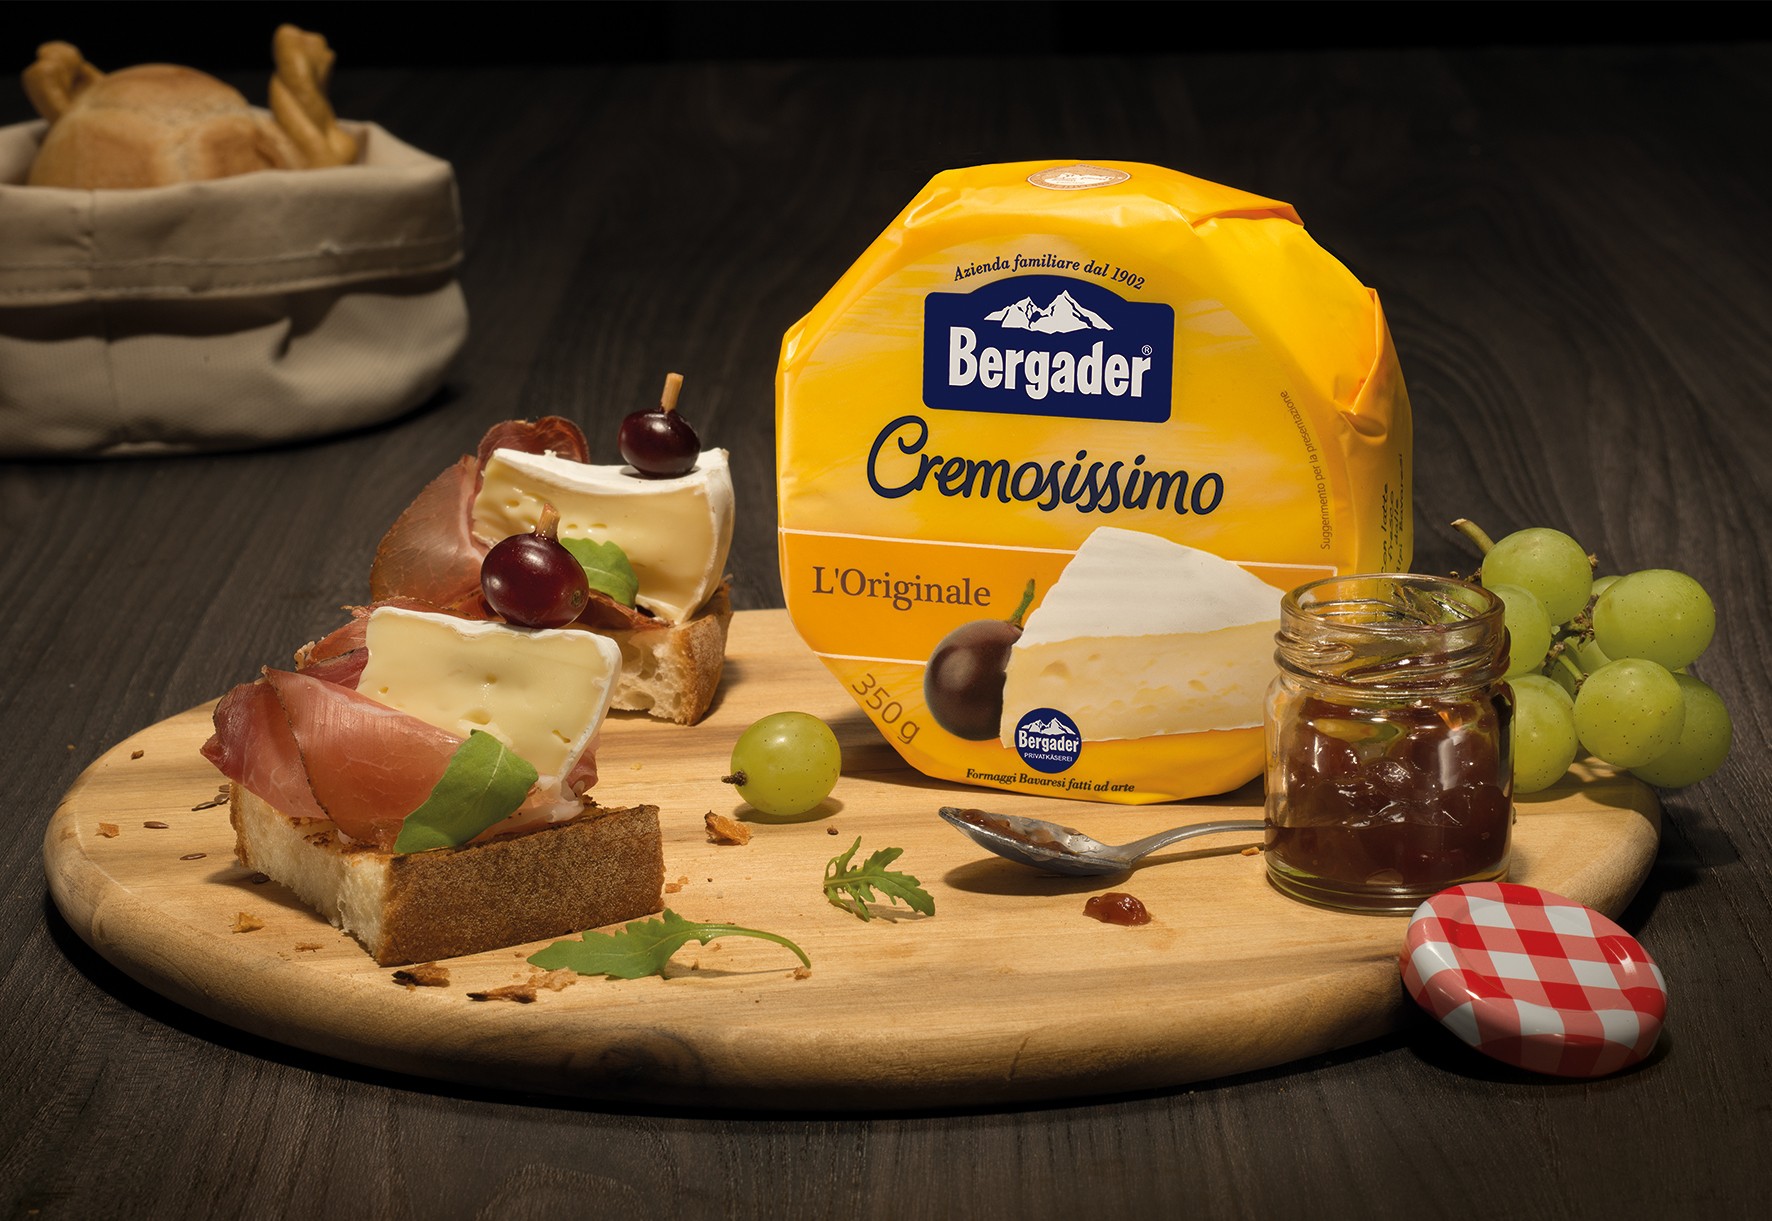 4 consigli utili per non sprecare i cremosi formaggi Bergader, nel rispetto dell'ambiente - Sapori News 